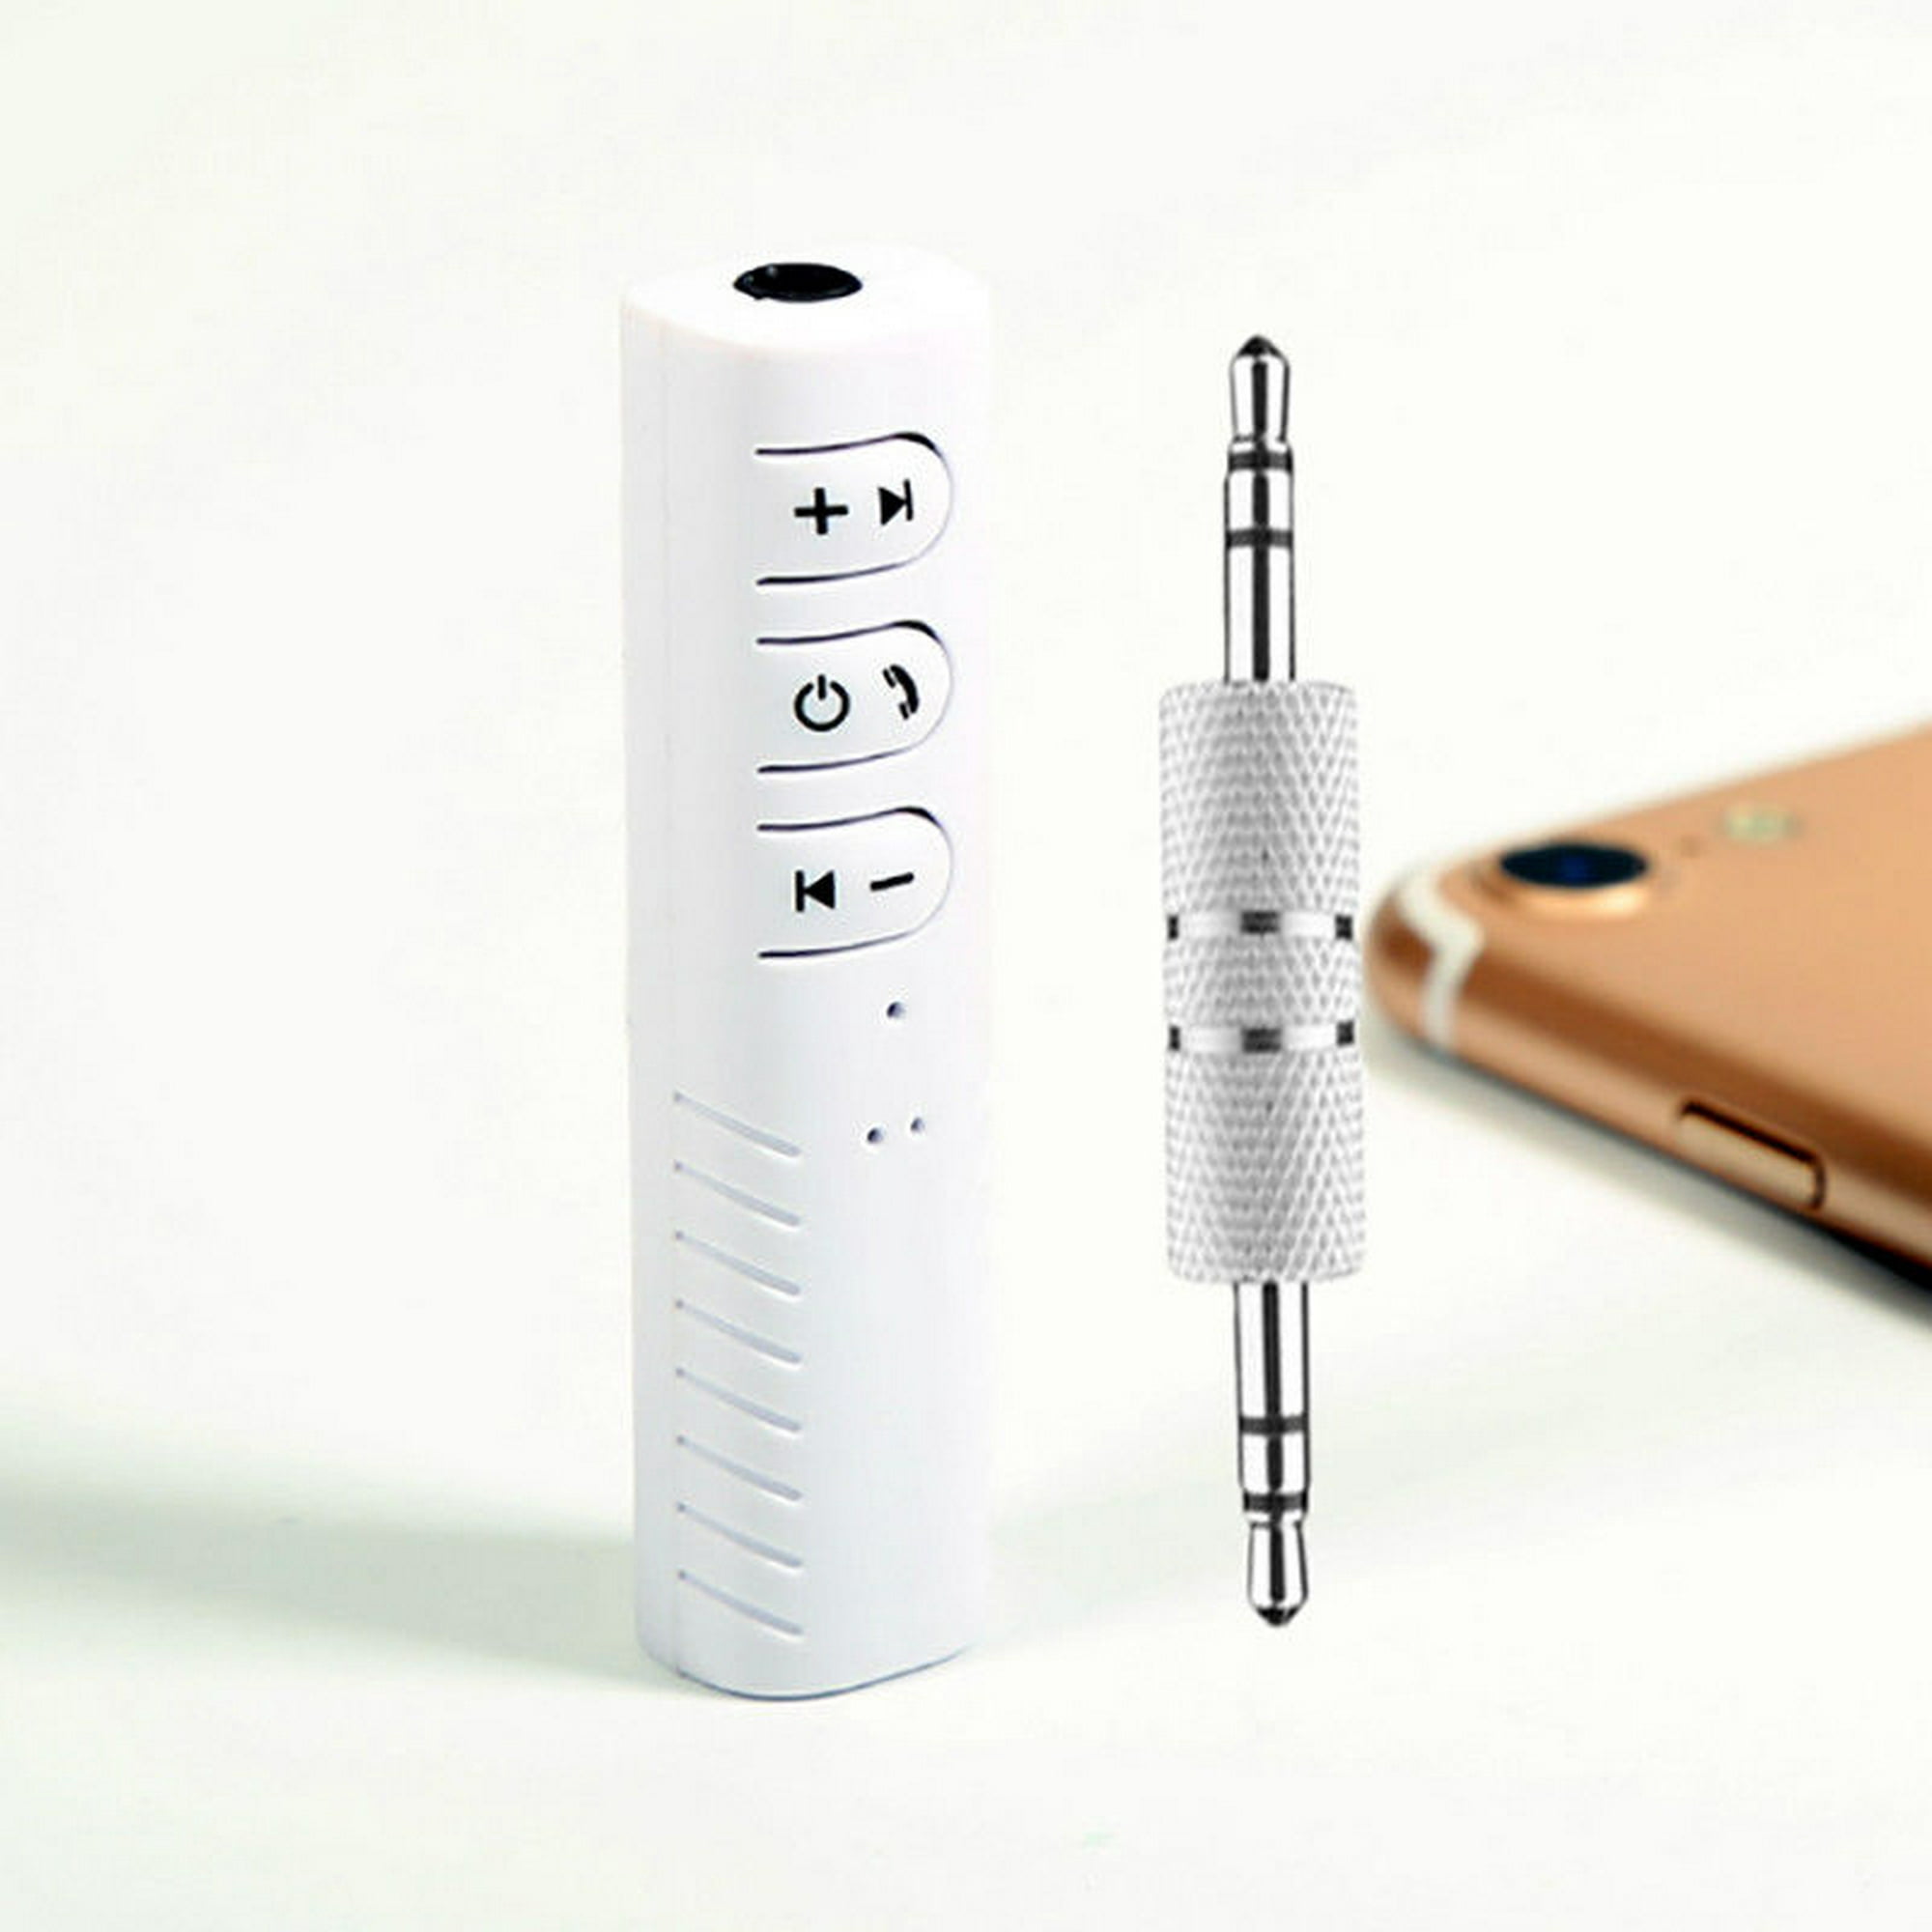 Mini Receptor De audio Bluetooth/transmisor Bluetooth Jack De 3.5 mm manos  libres/Kit Adaptador Bluetooth De Música De coche